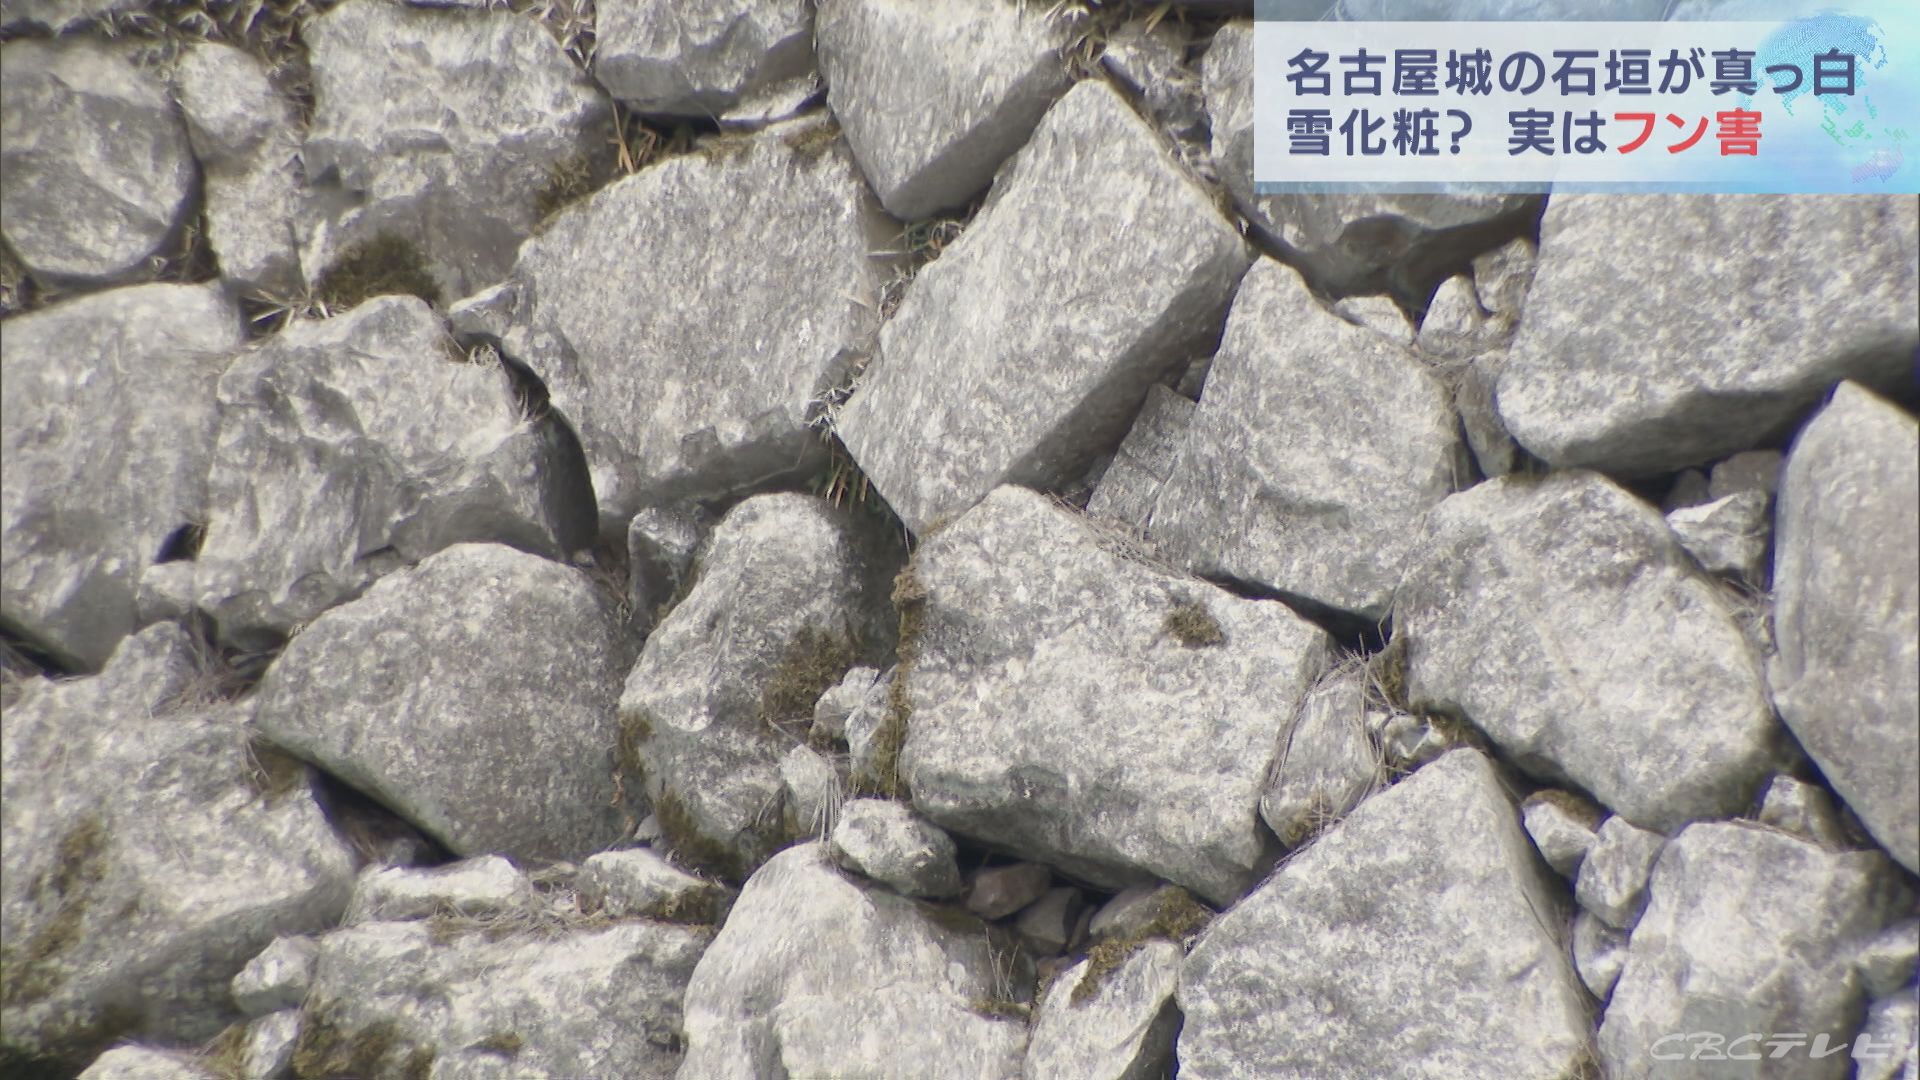 雪？　霜？　いいえ！　鳥のふんで名古屋城の石垣が真っ白に　「当面は様子を見守るしか」と関係者は困惑